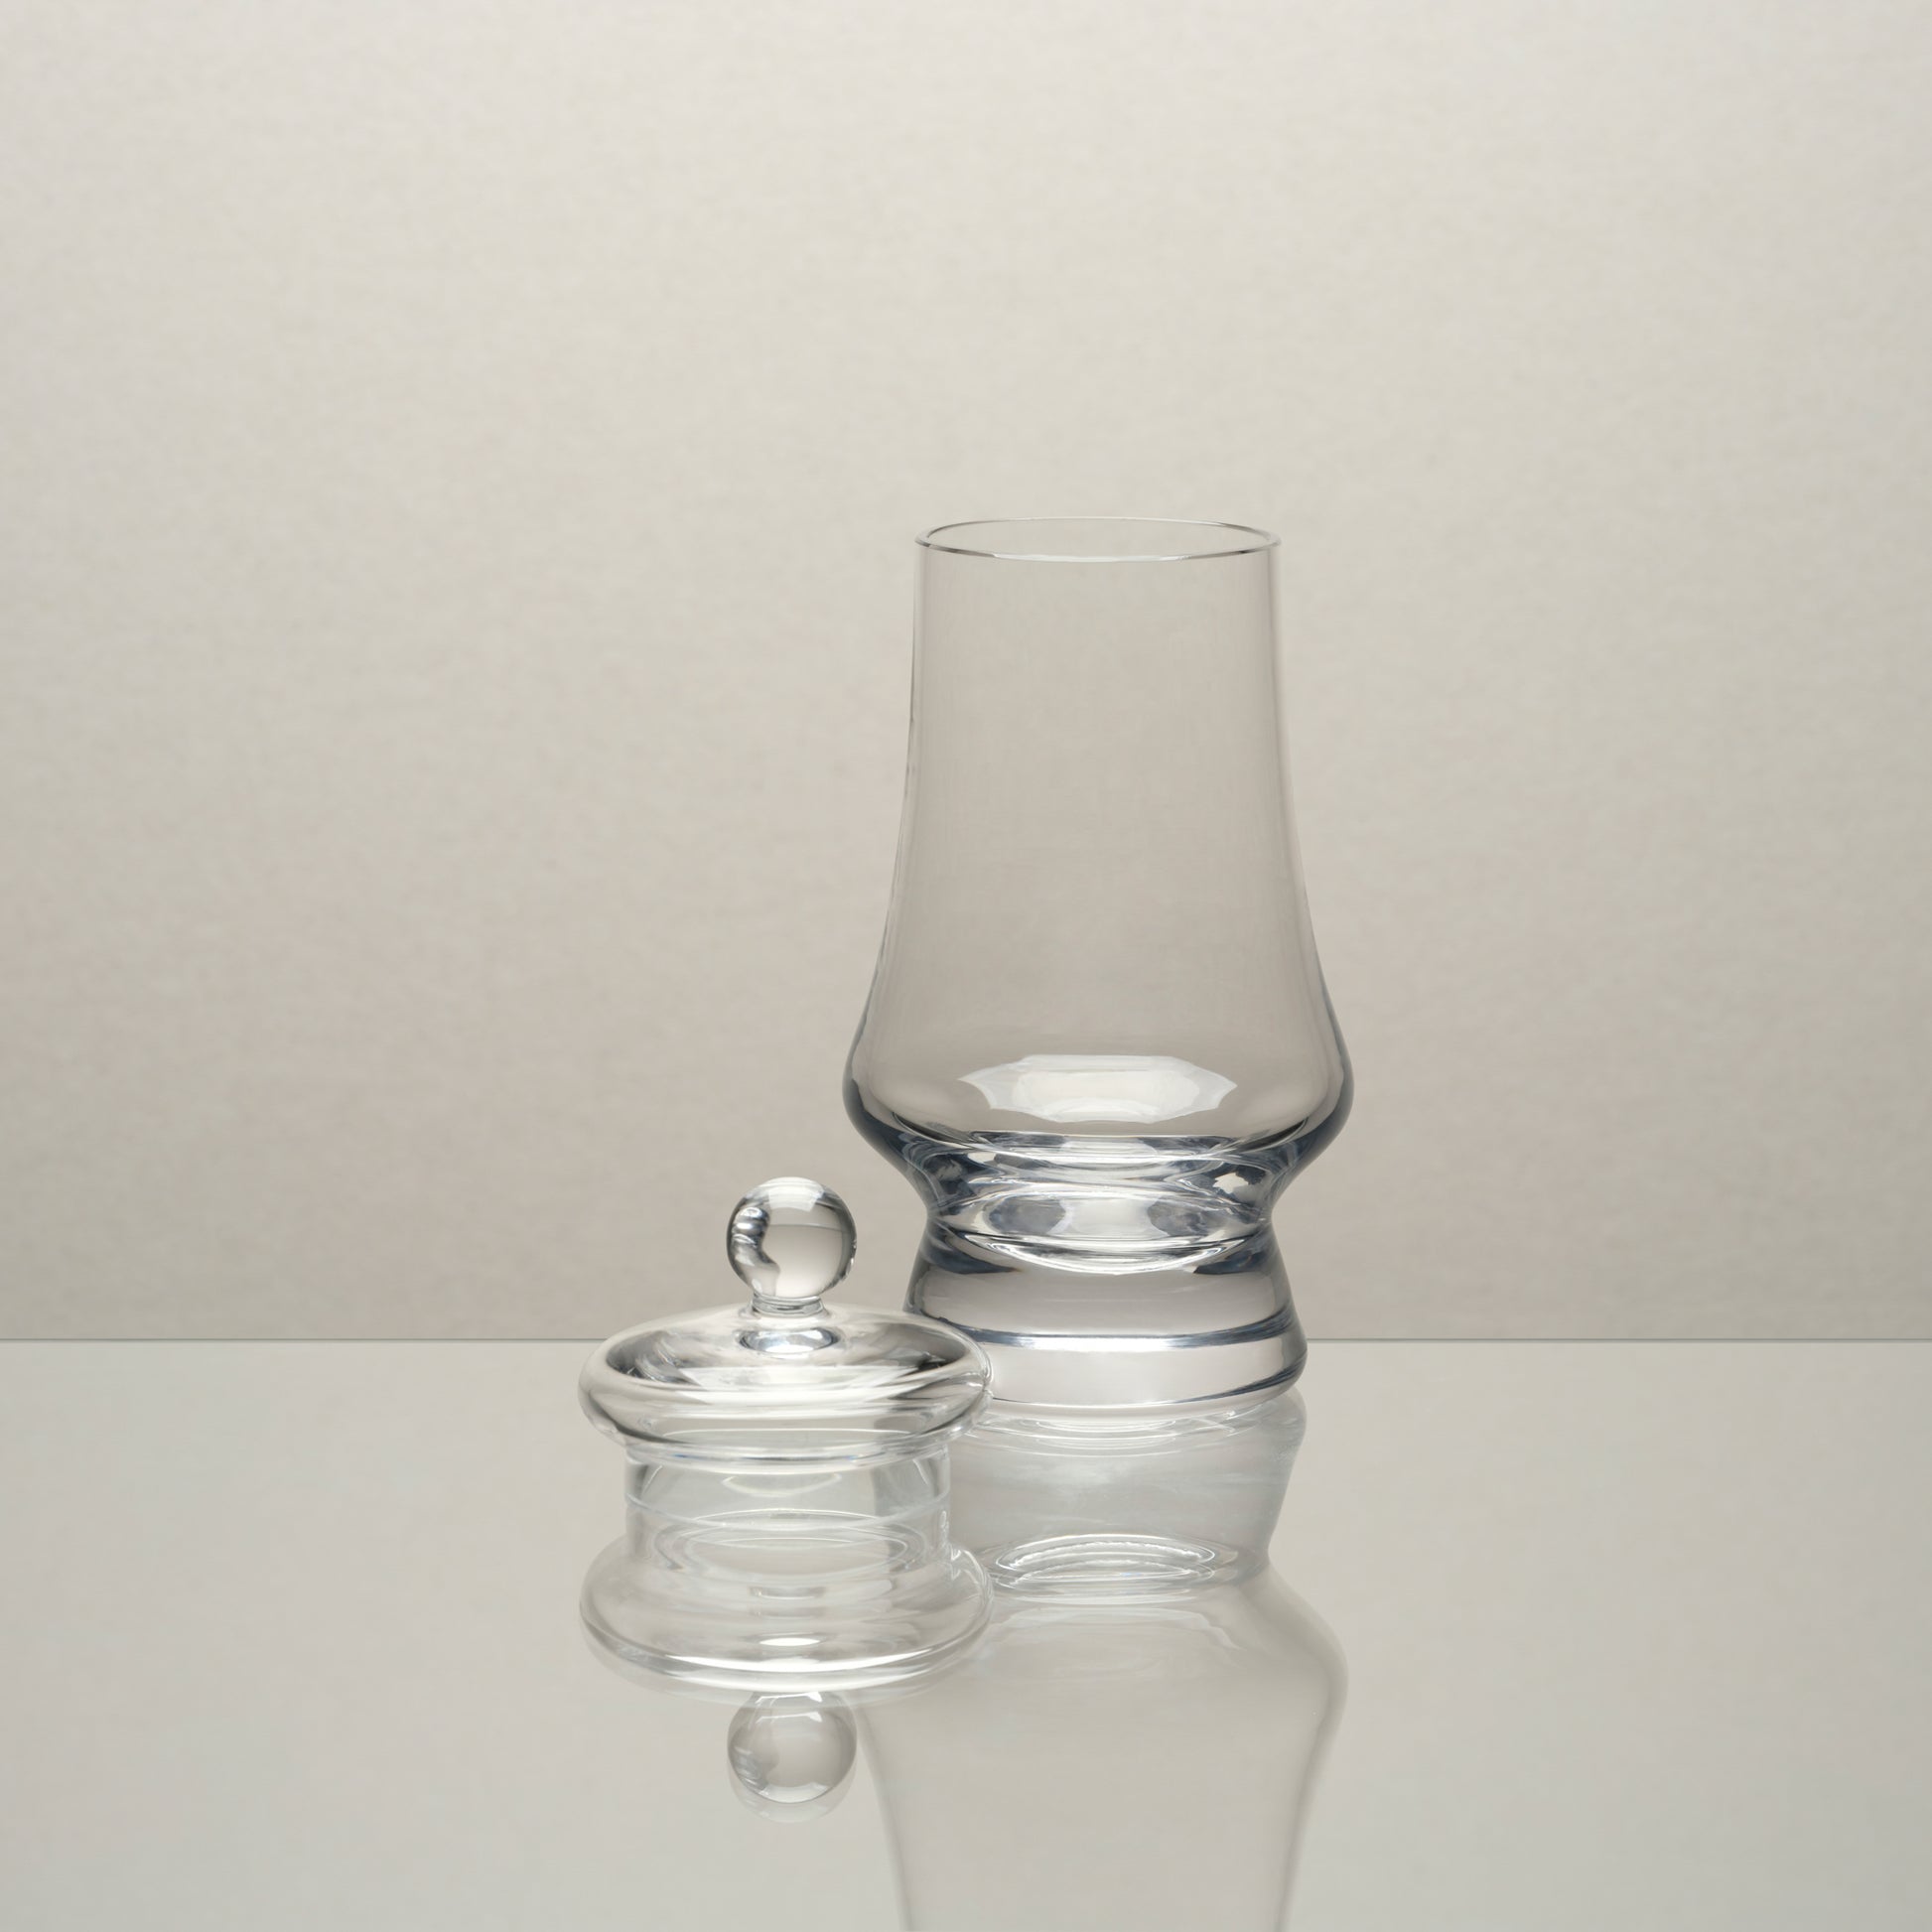 Amber Glass - G500 Whisky Tasting Glass